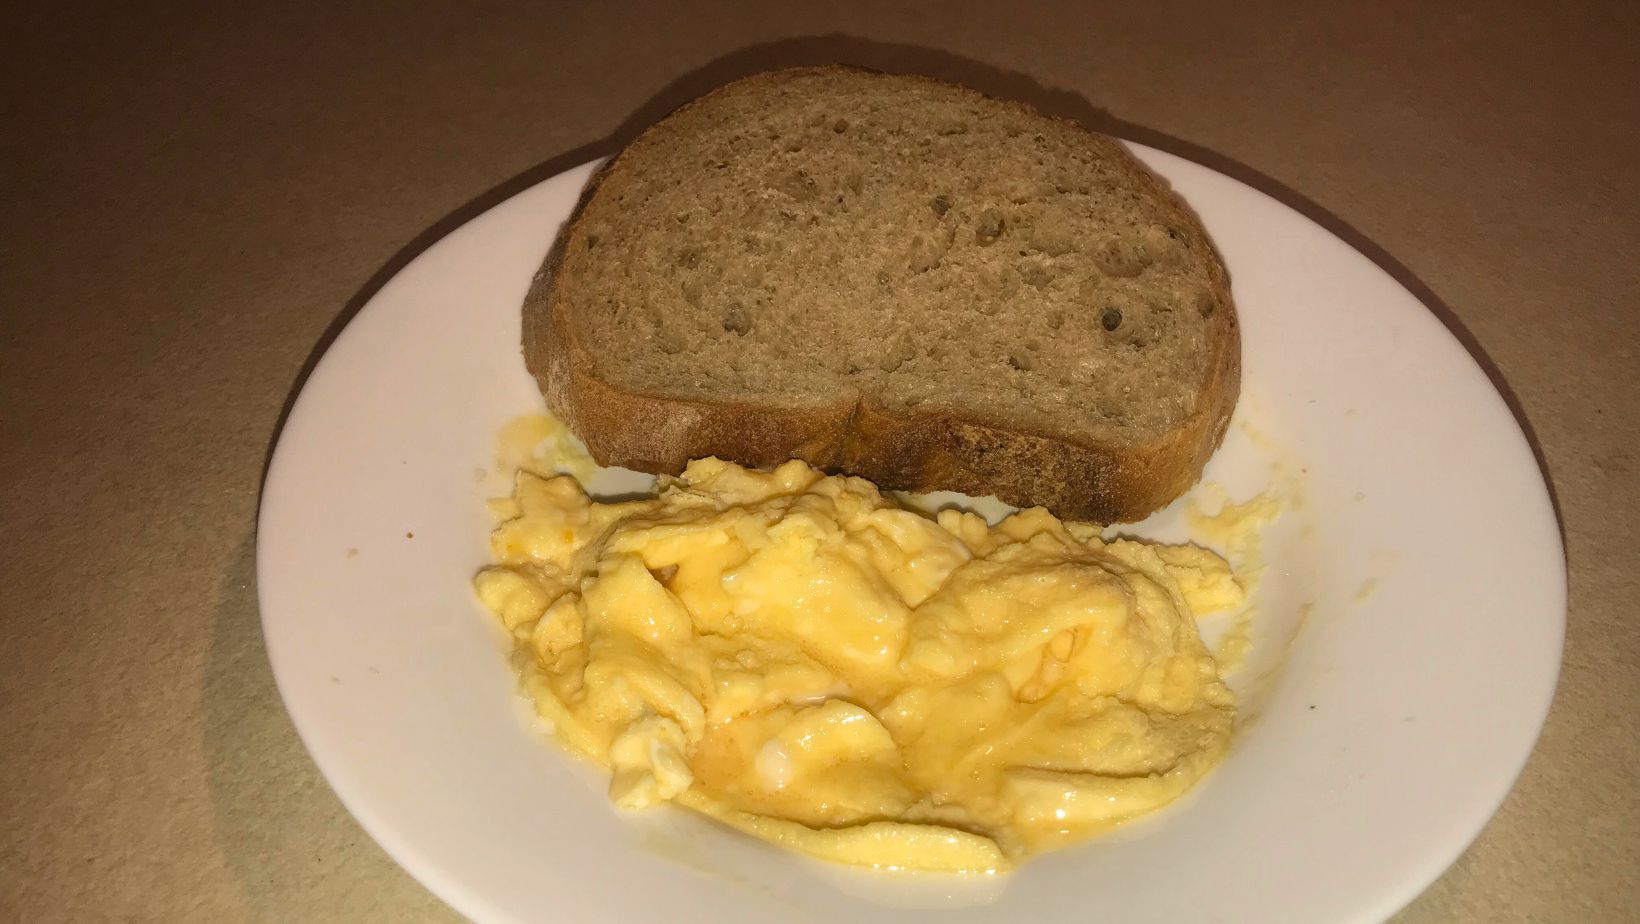 Lágy sült tojás mikróban – Mikrós tojásrántotta recept